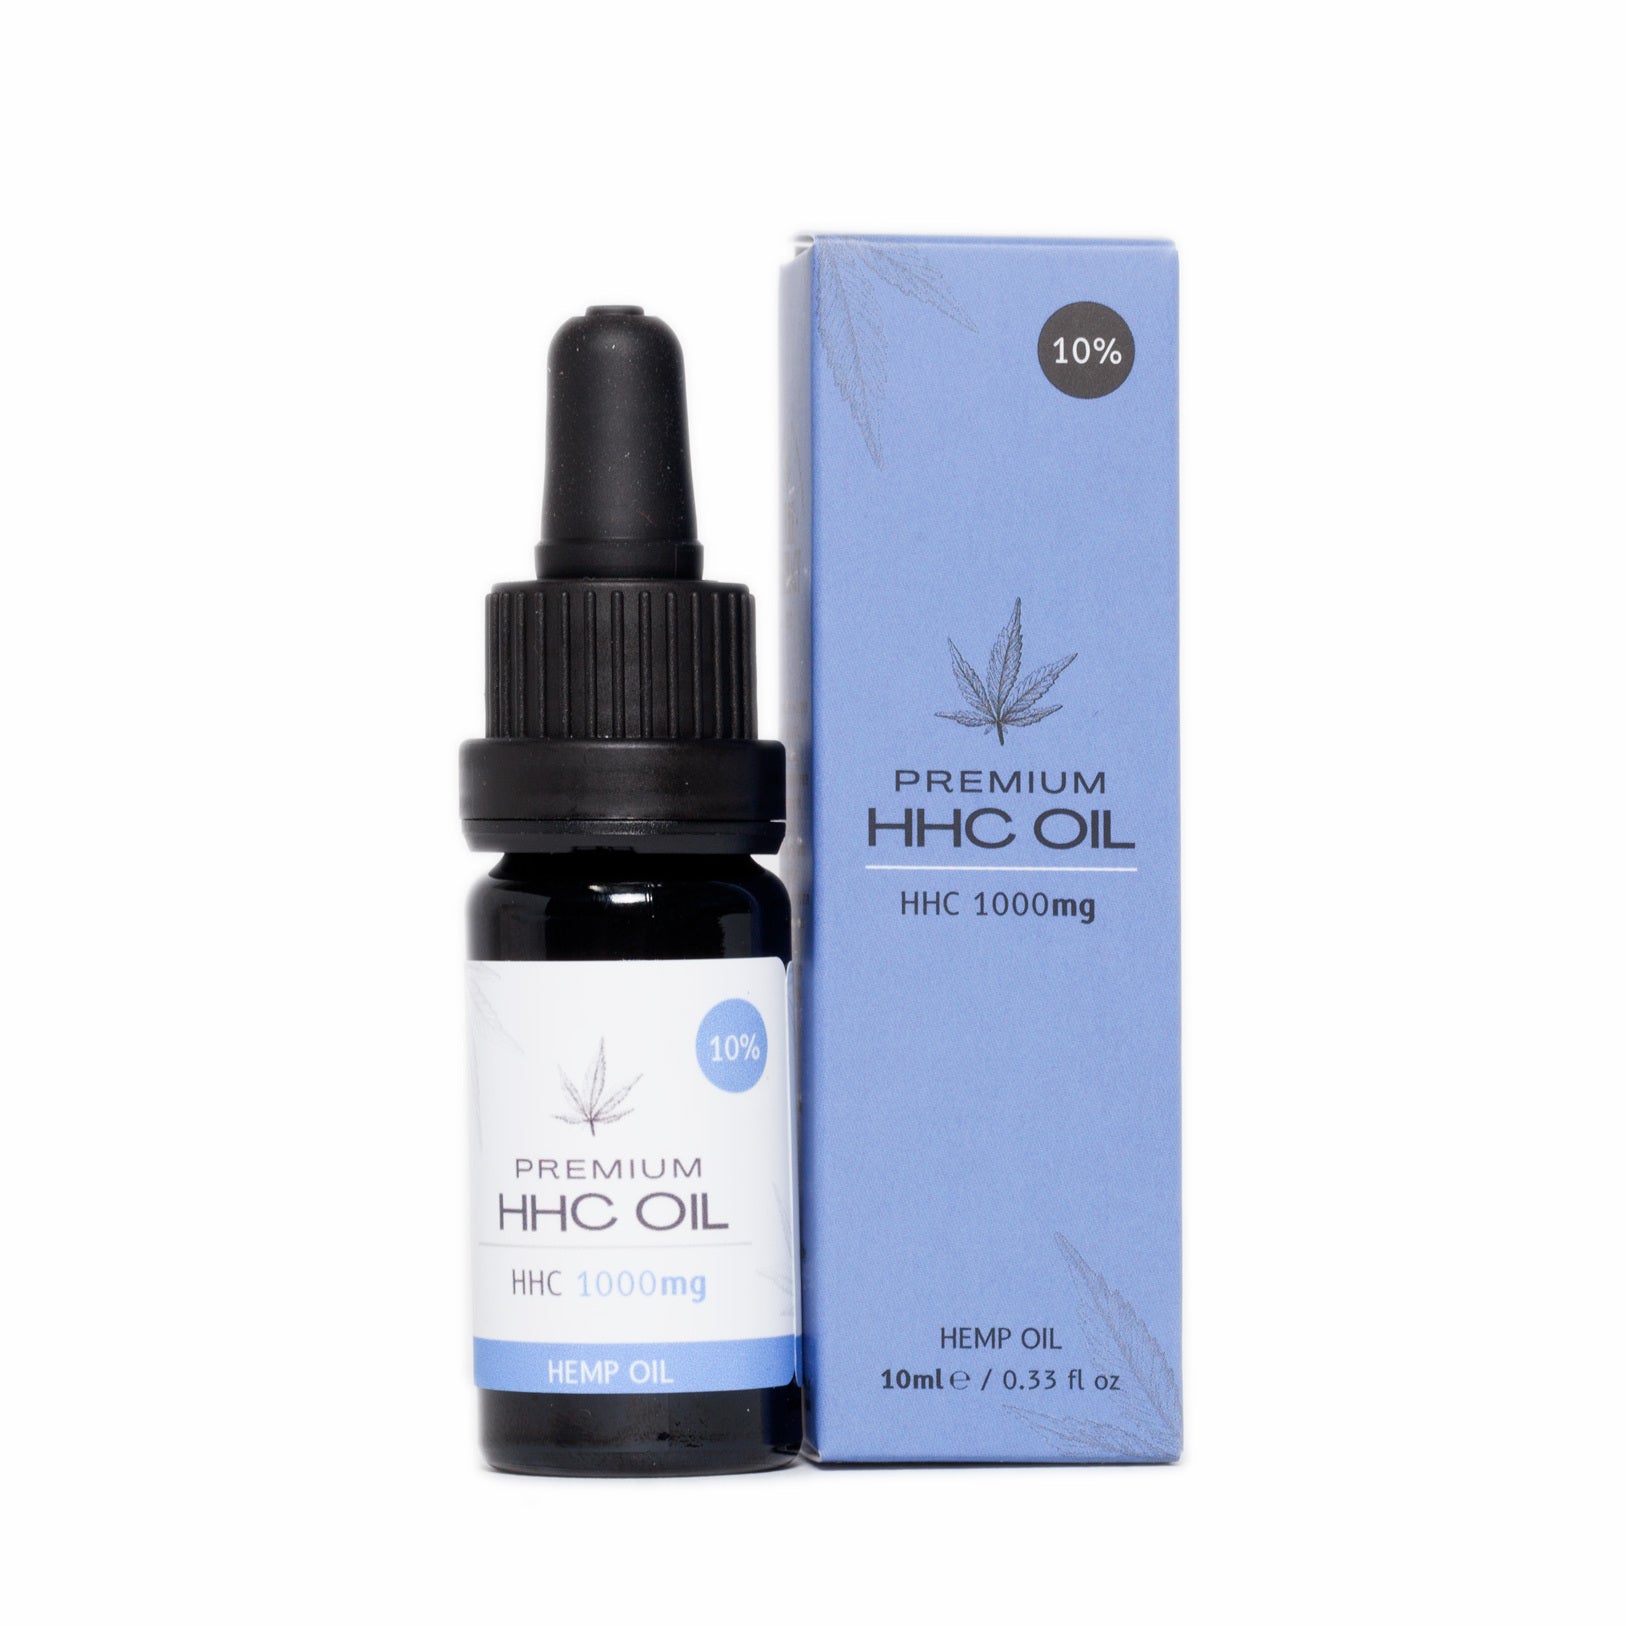 HHC Oil 10% (Hexahydrocannabinol) - 10ml - Pure Extract Cbd